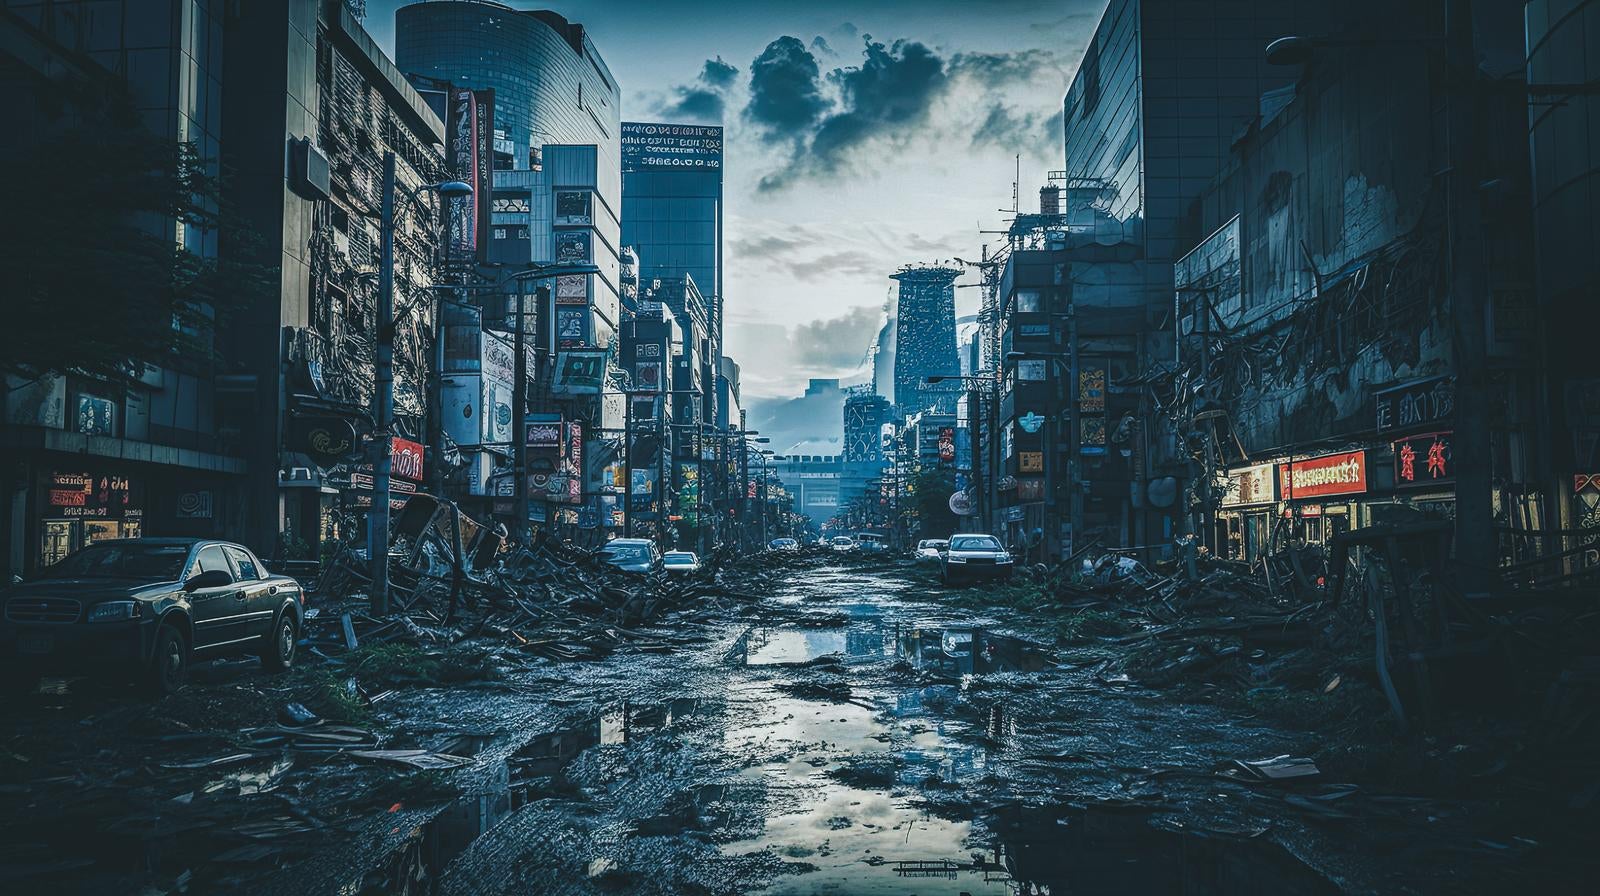 「街の崩壊後の世界、荒廃と再生の狭間で」の写真